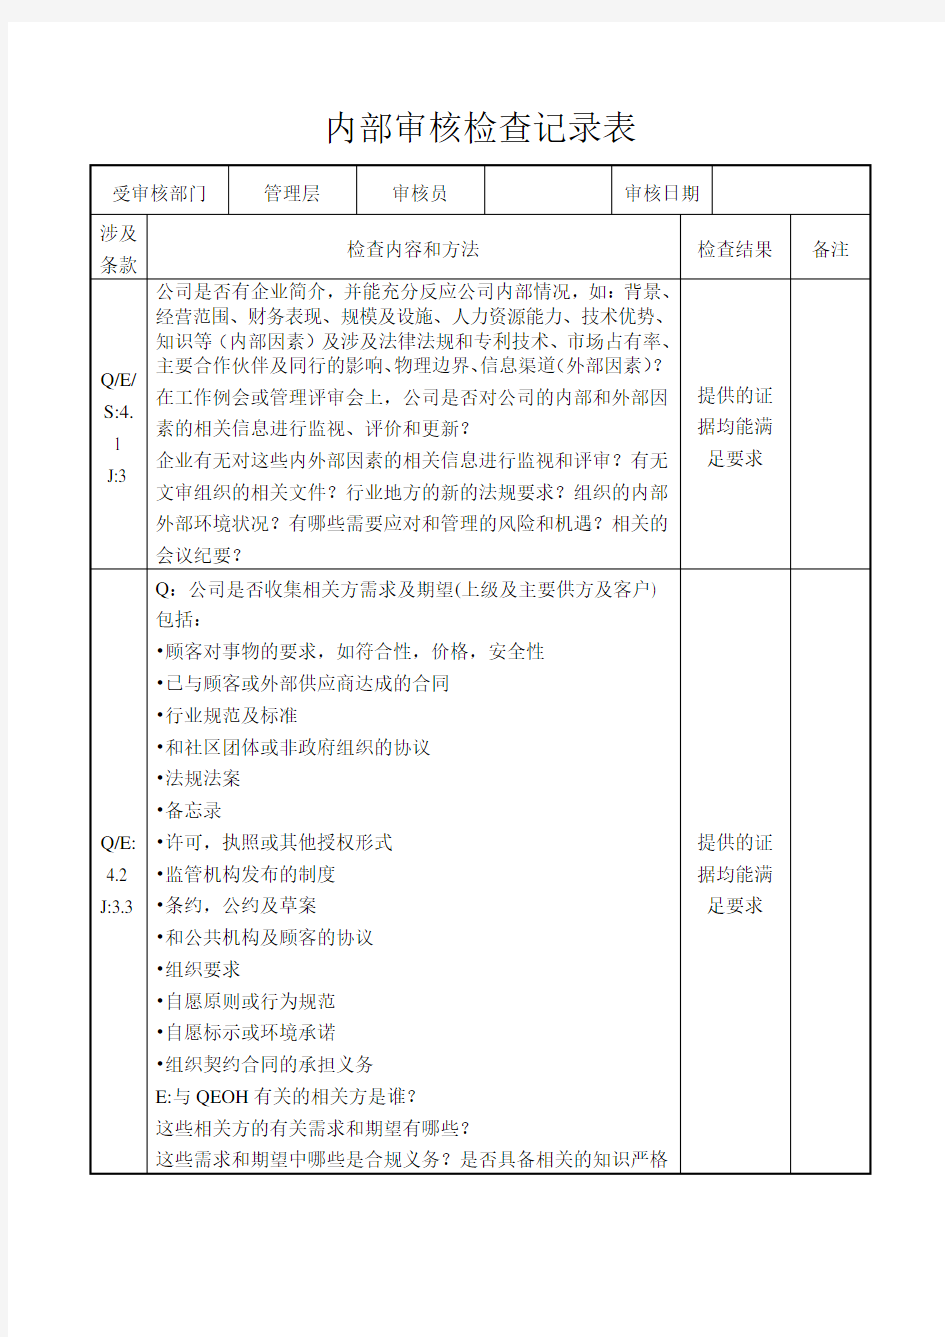 2015版建筑三体系(含50430)内部审核检查记录表(完整版)